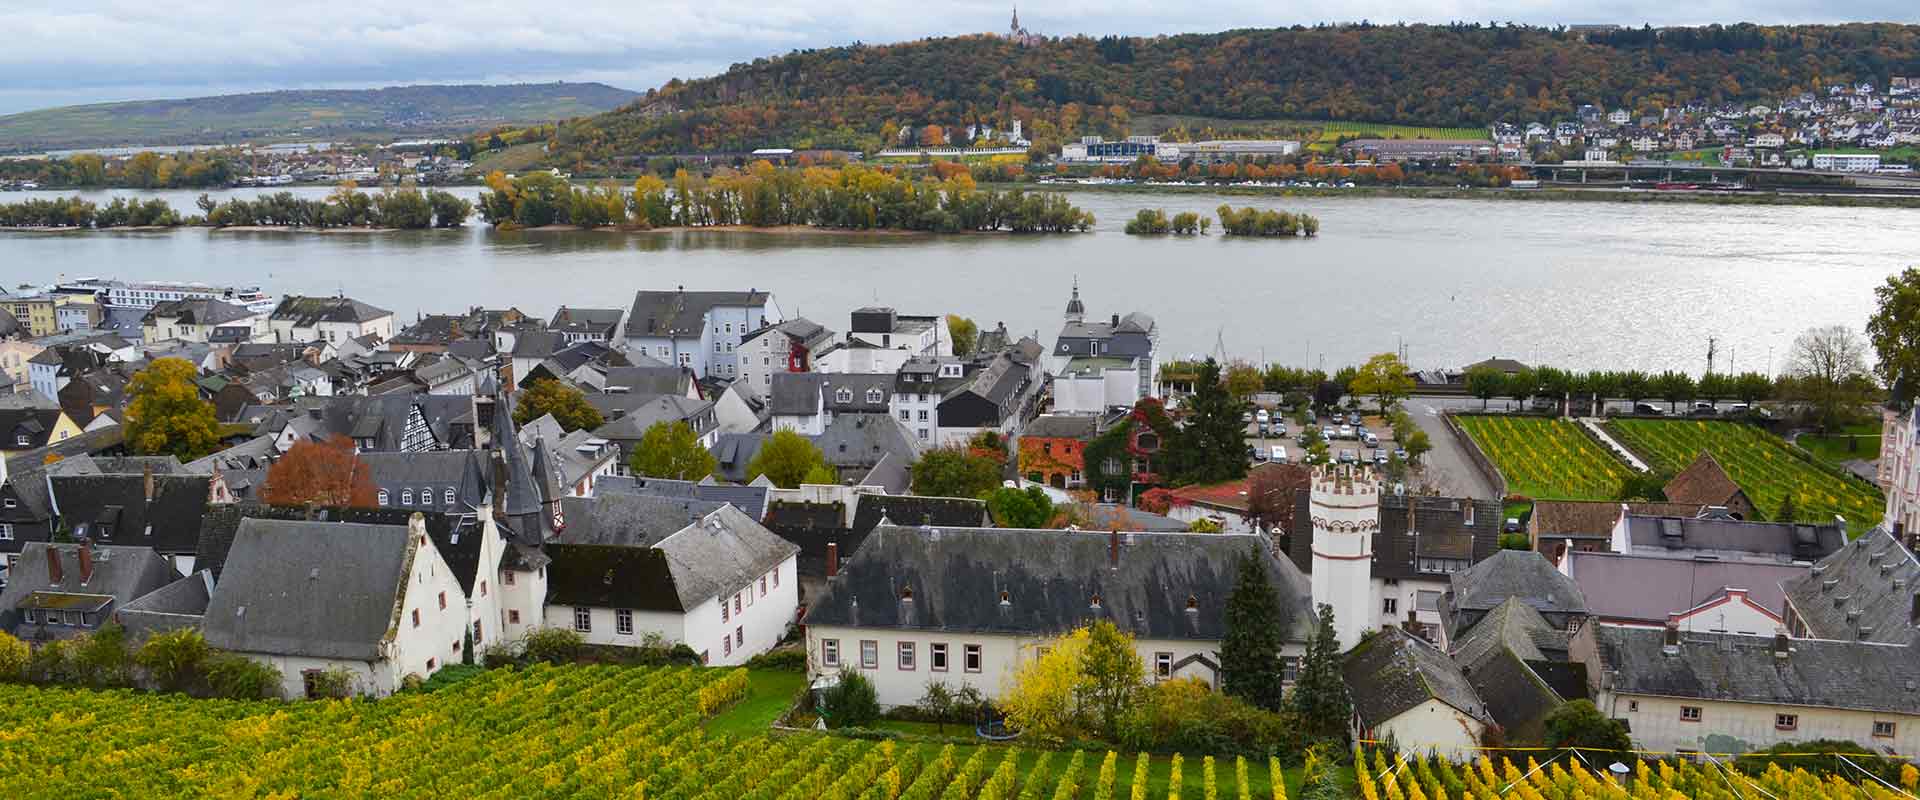 rudesheim riverfront vineyards, germany